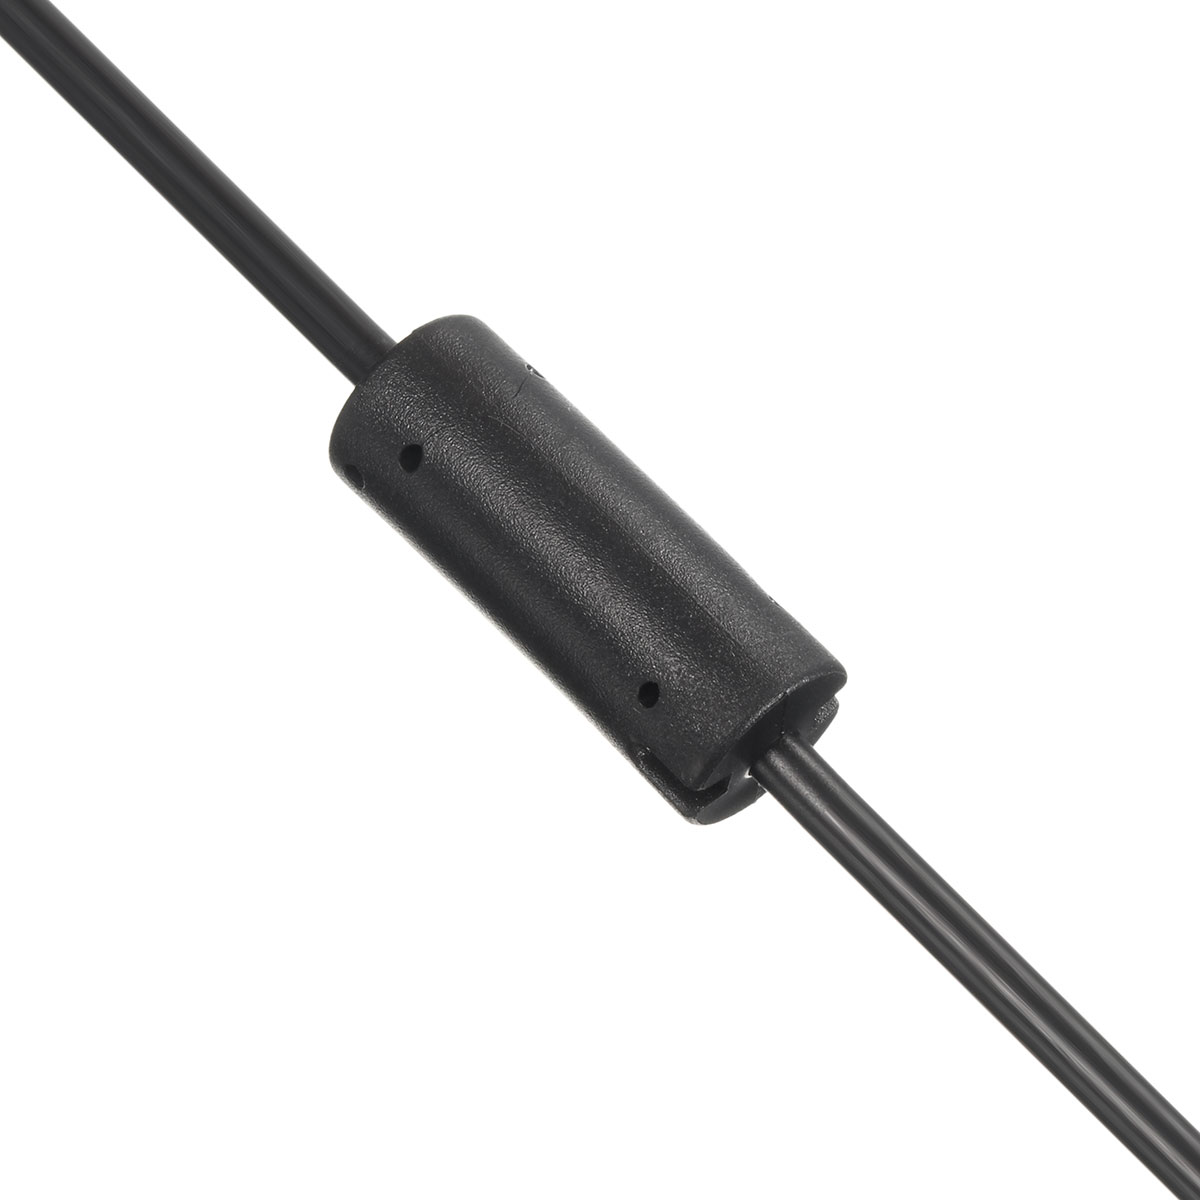 2.3m USB AC Adapter Power Supply Cable for Xbox 360 Kinect Sensor EU/US Plug 23